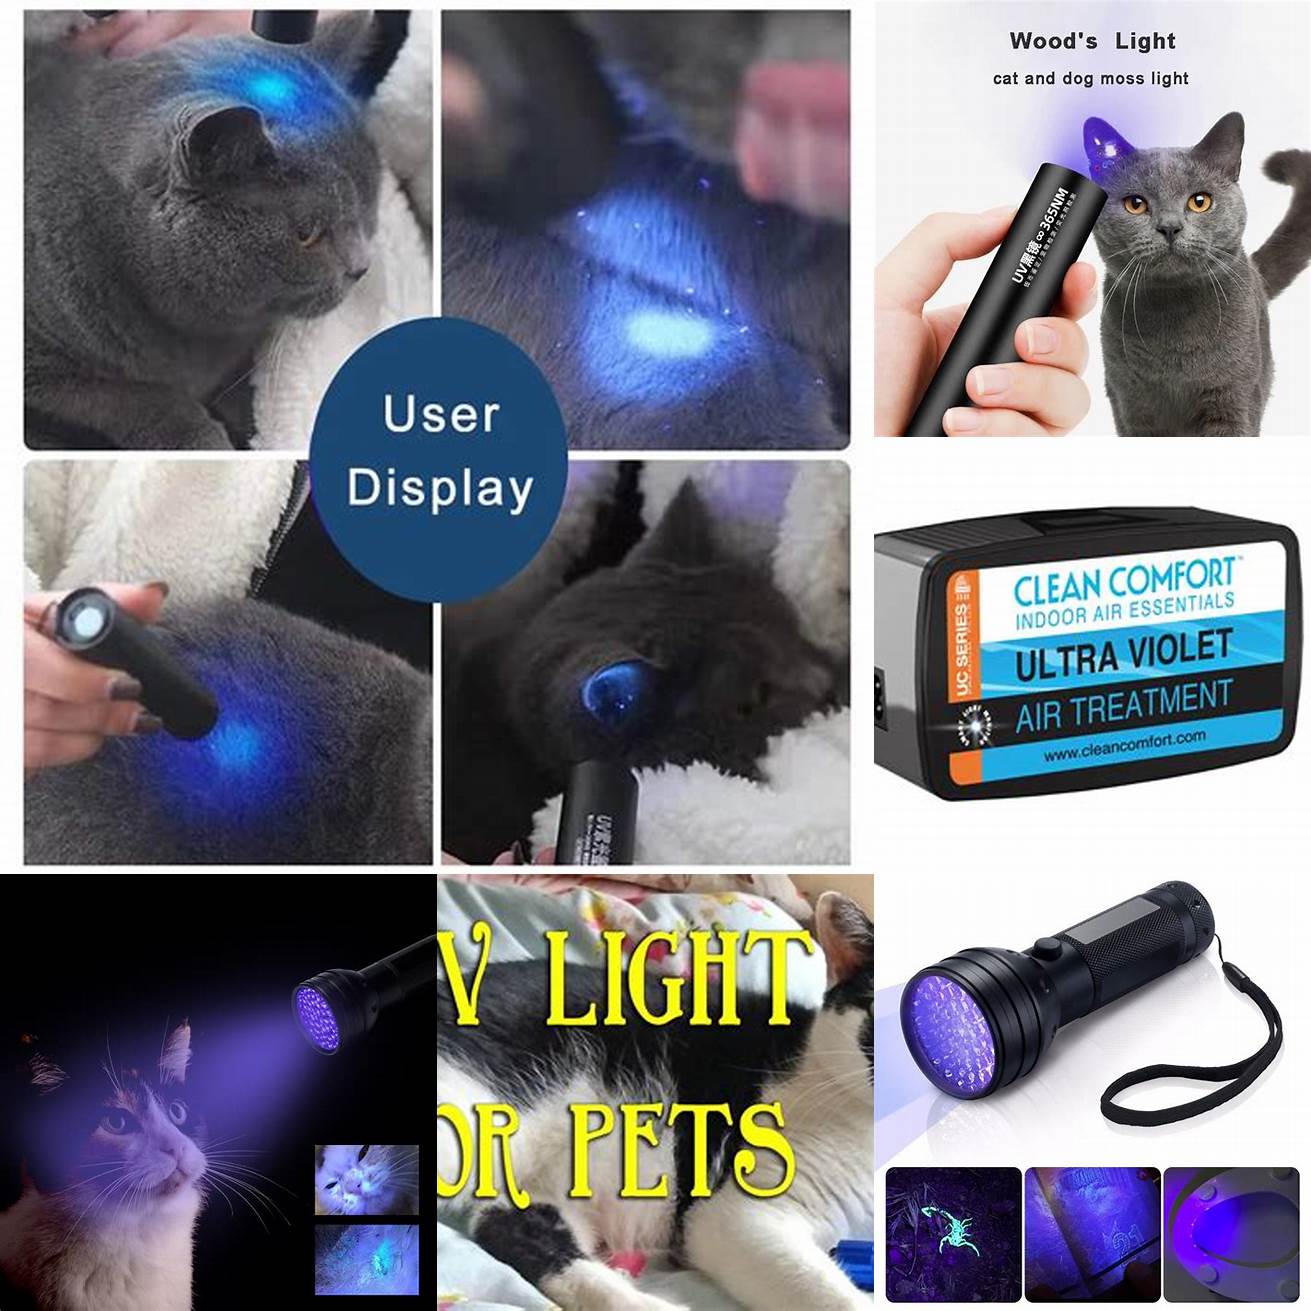 UV-C Lights